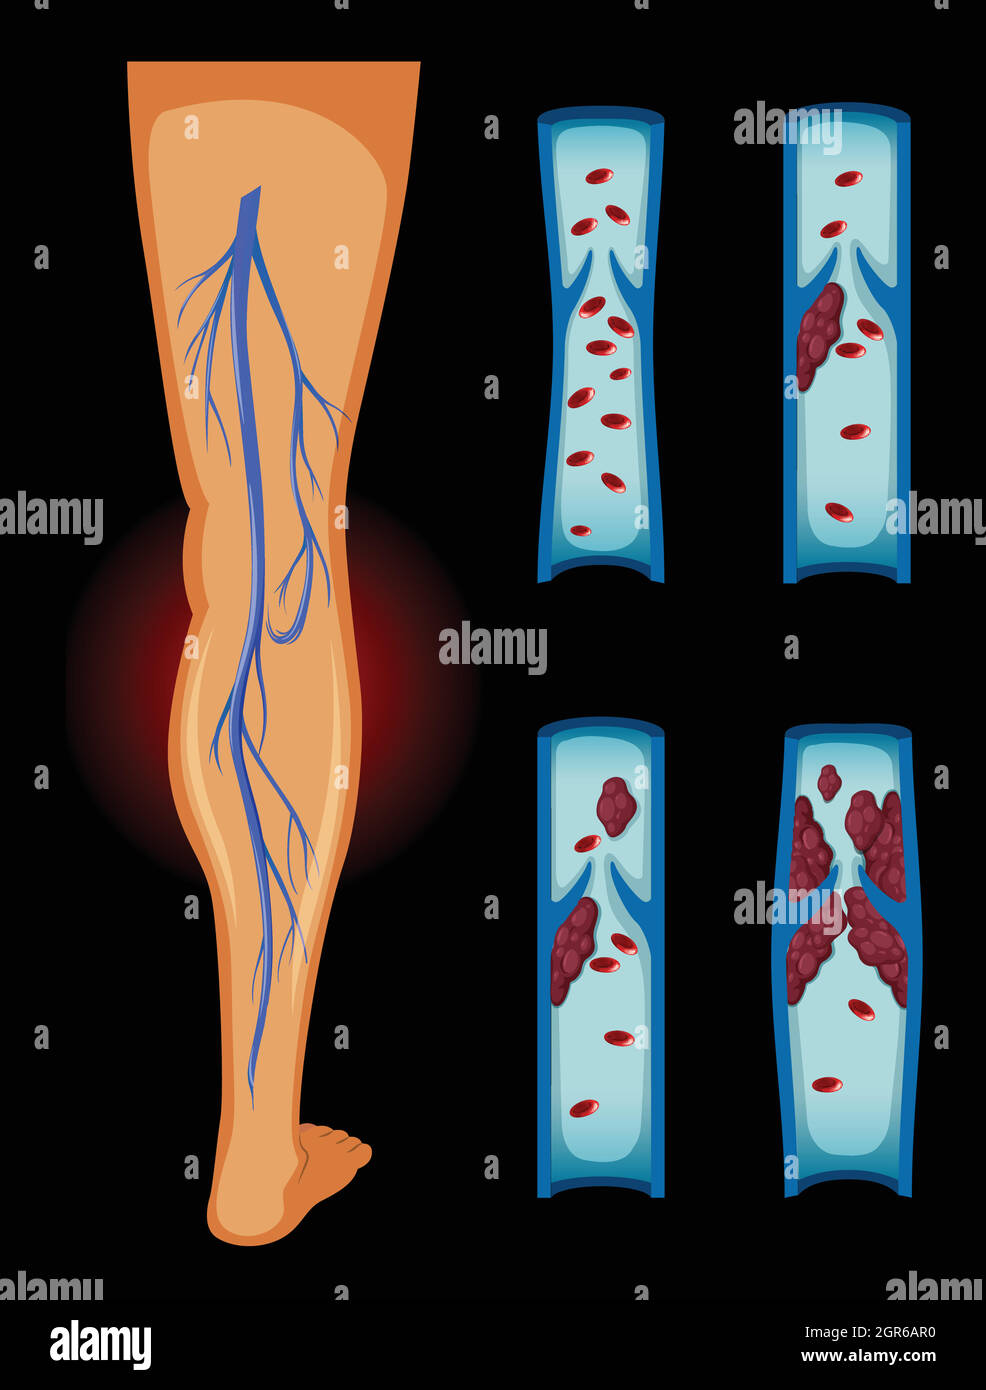 Caillot de sang dans la jambe humaine Illustration de Vecteur